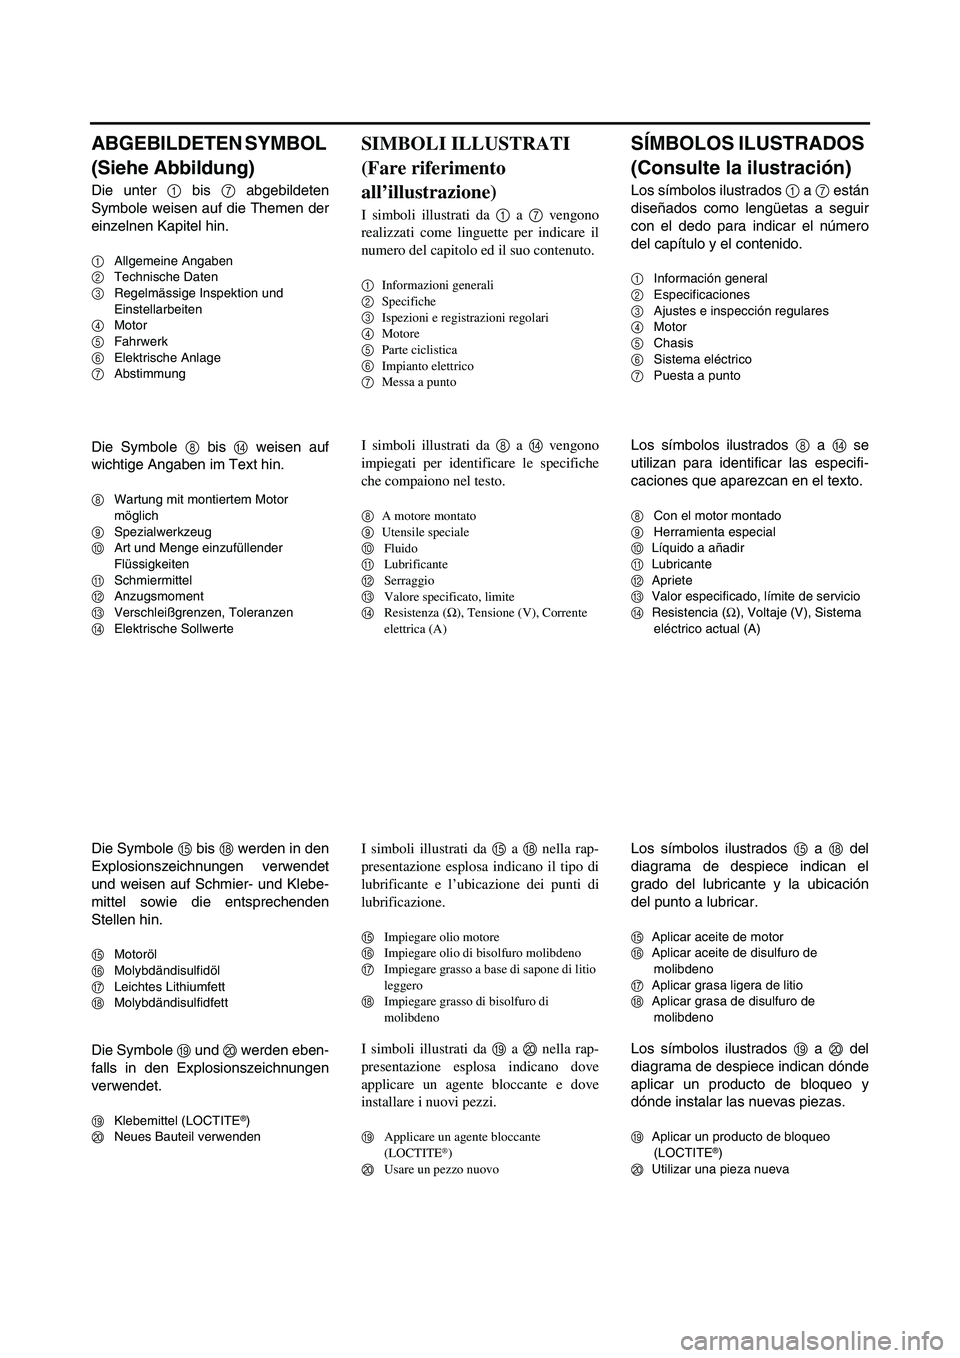 YAMAHA WR 250F 2004  Manuale de Empleo (in Spanish) ABGEBILDETEN SYMBOL 
(Siehe Abbildung)
Die unter 1 bis 7 abgebildeten
Symbole weisen auf die Themen der
einzelnen Kapitel hin.
1Allgemeine Angaben
2Technische Daten
3Regelmässige Inspektion und 
Eins